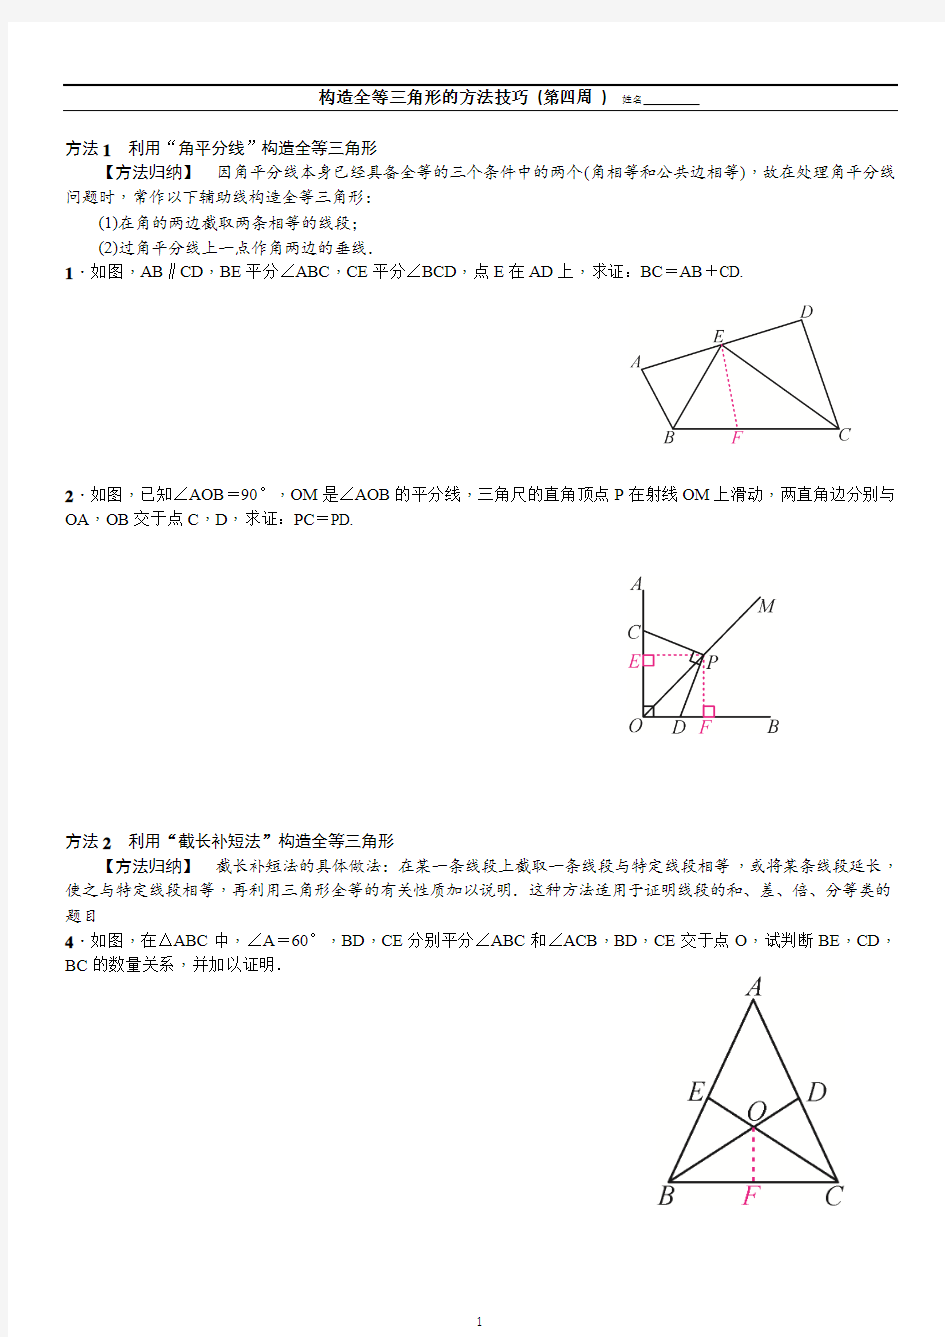 构造全等三角形的方法技巧